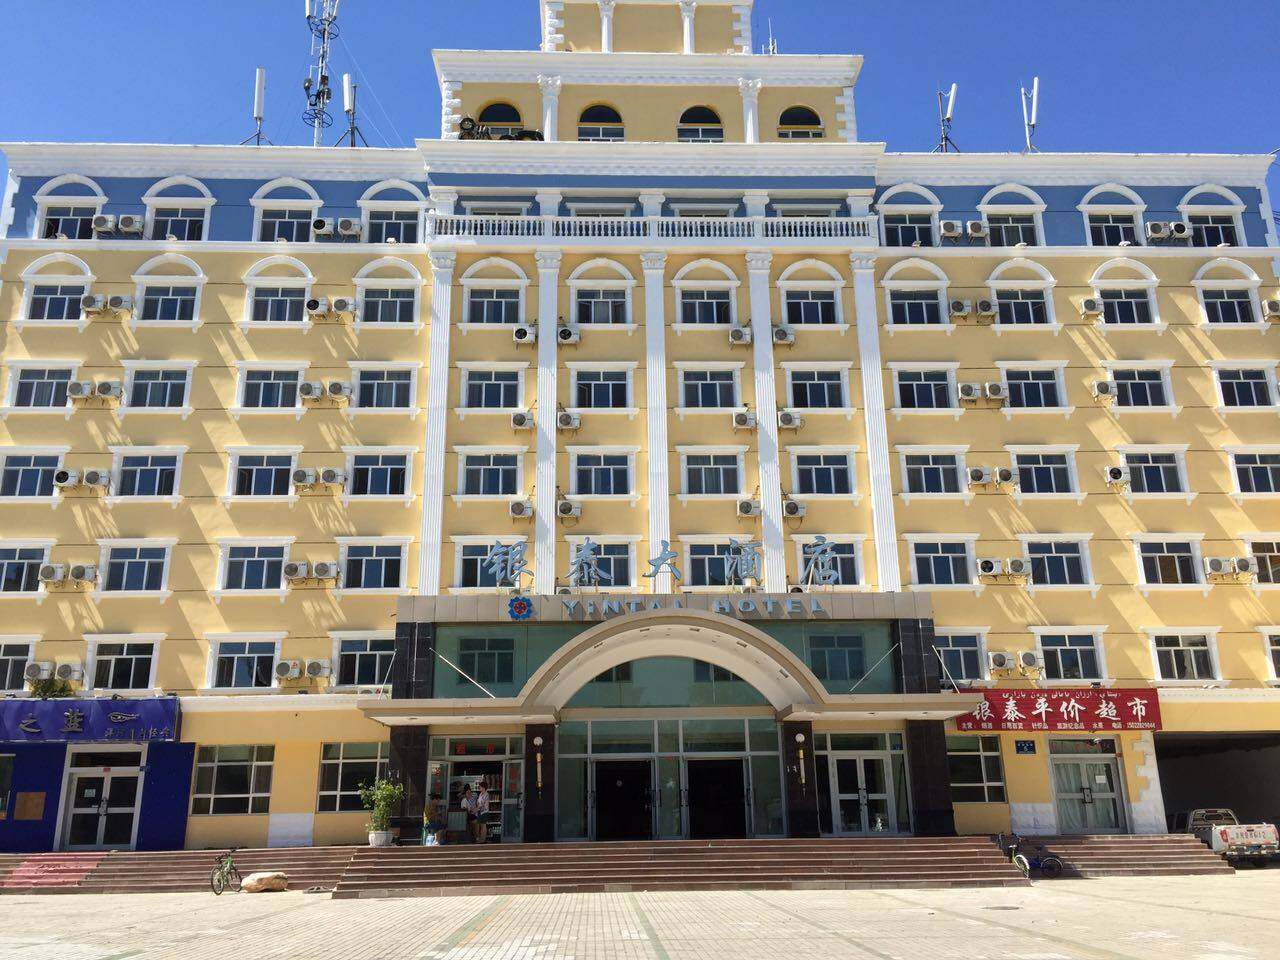 布尔津友谊峰大酒店 Friendship Peak Hotel @ Buerjin-更多经济连锁-FLYERT